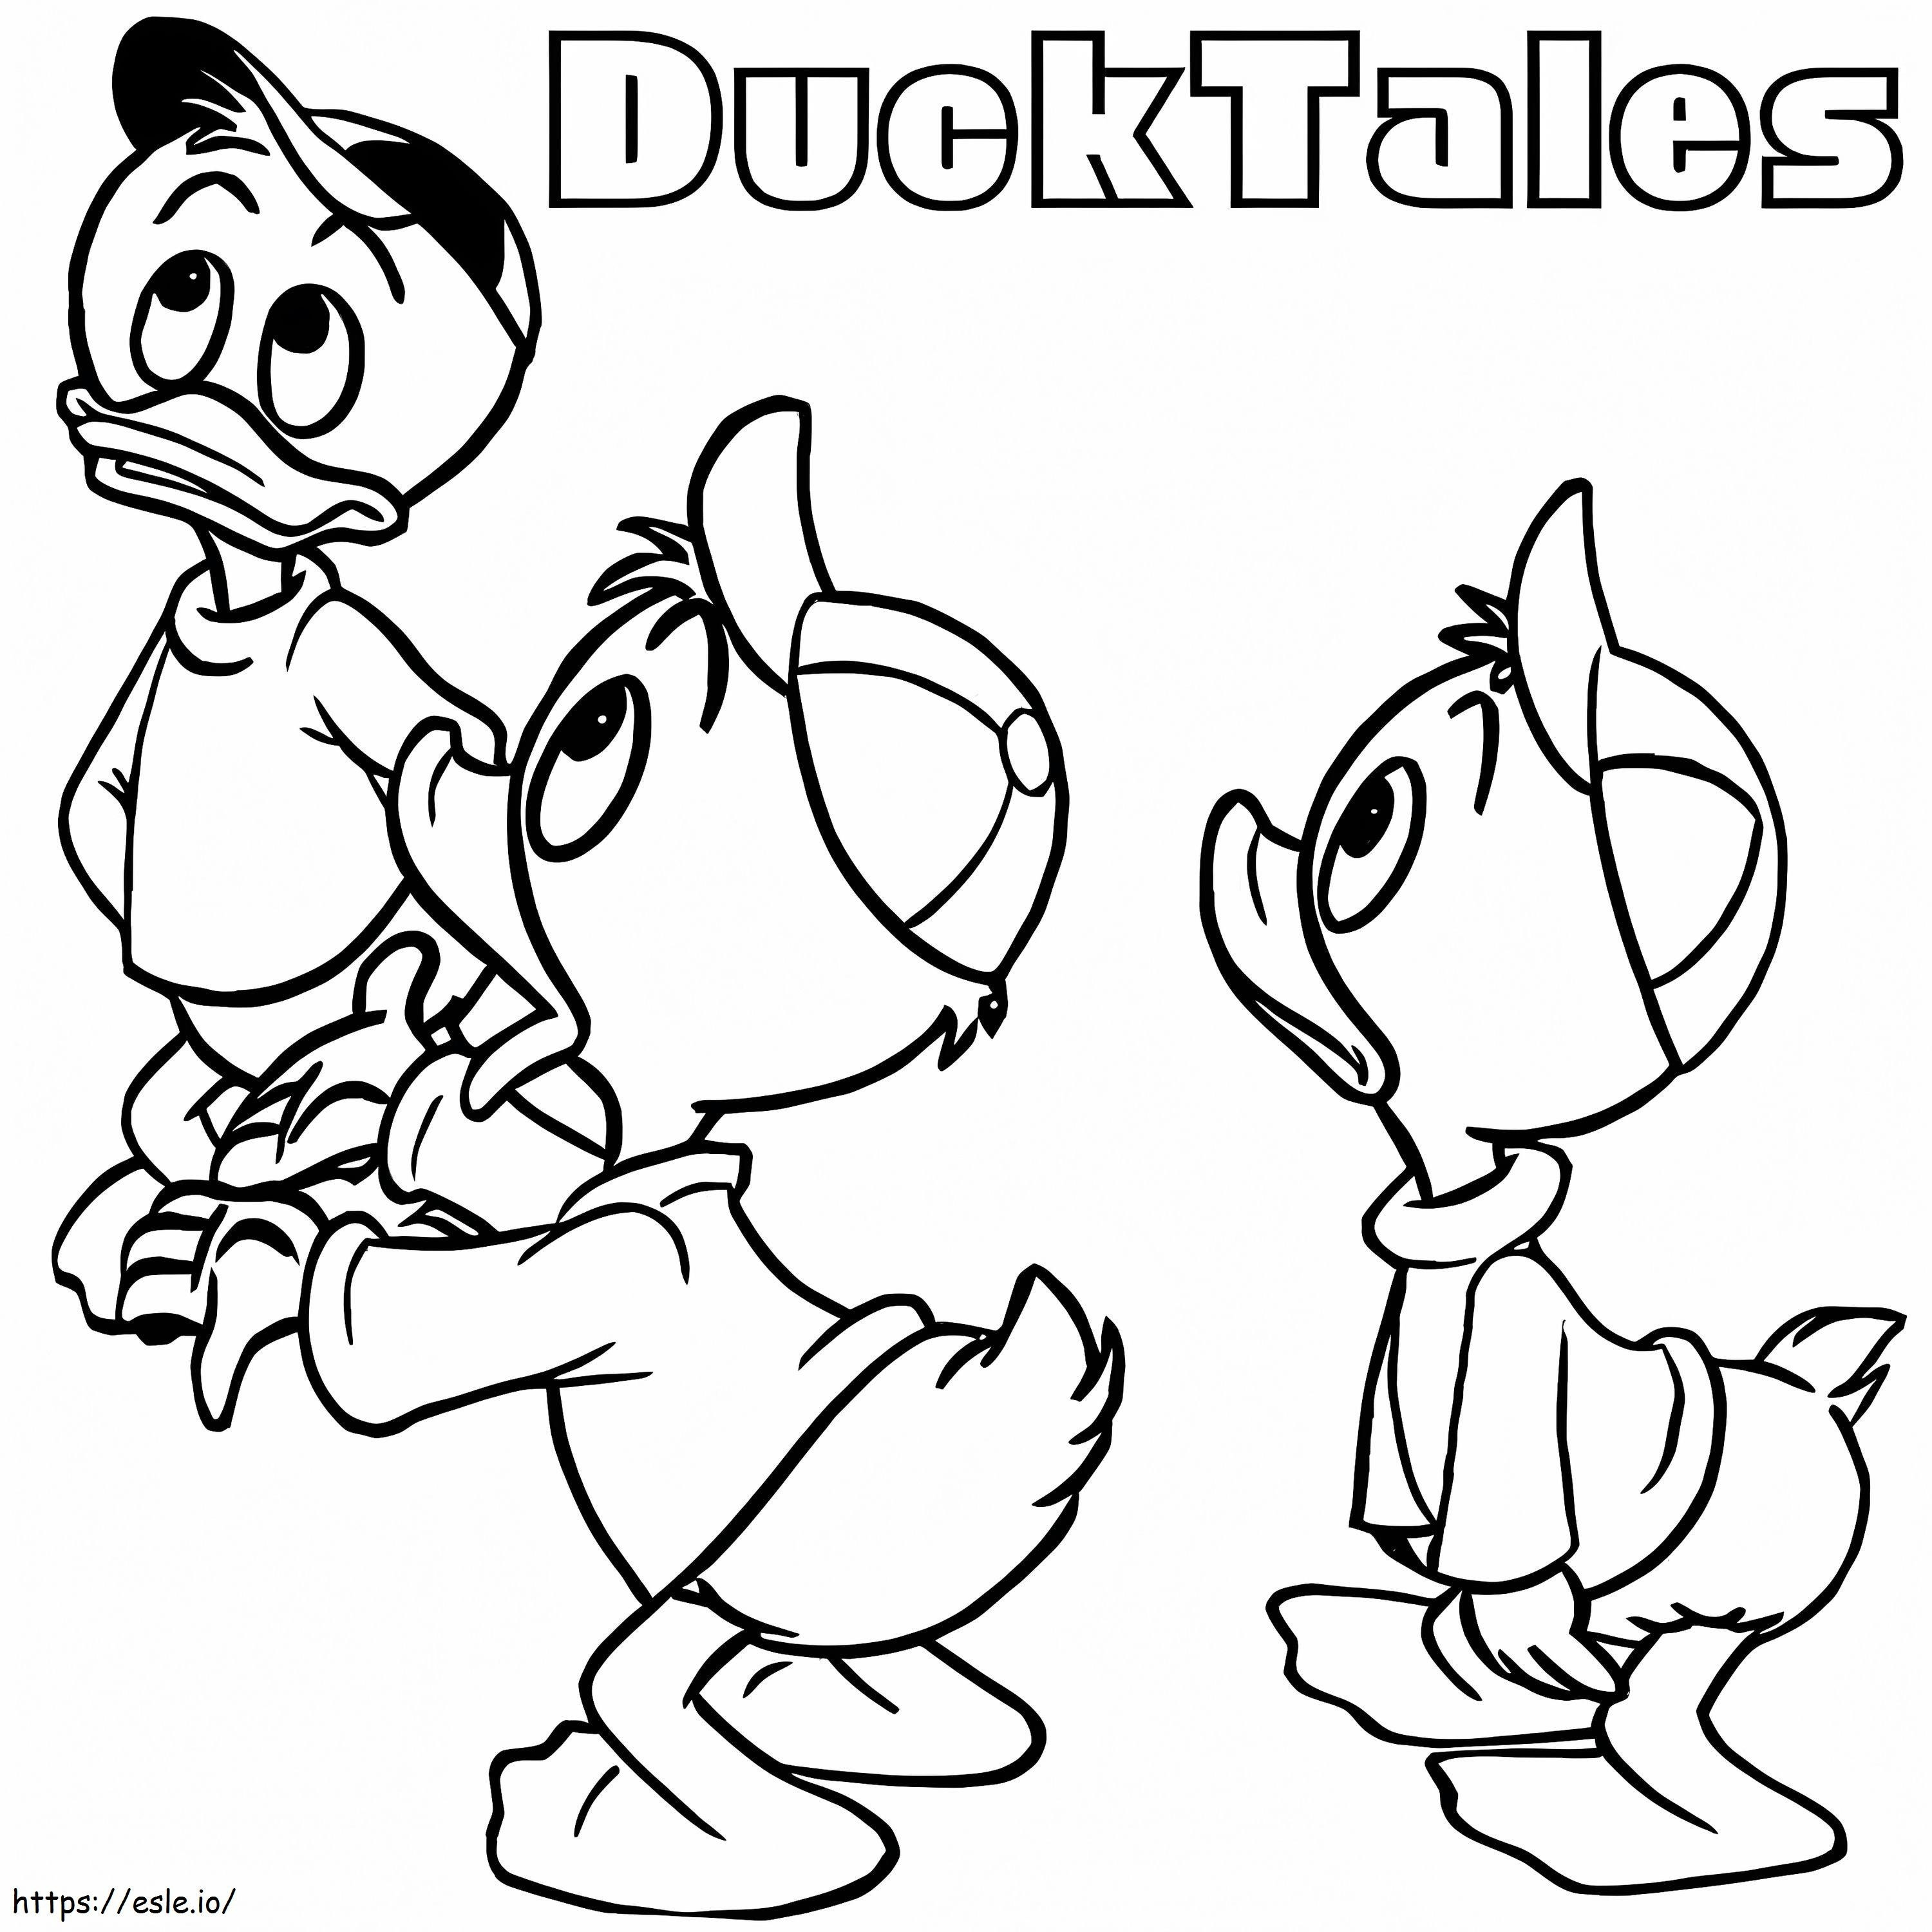 Ducktalesden Huey Dewey Ve Louie coloring page